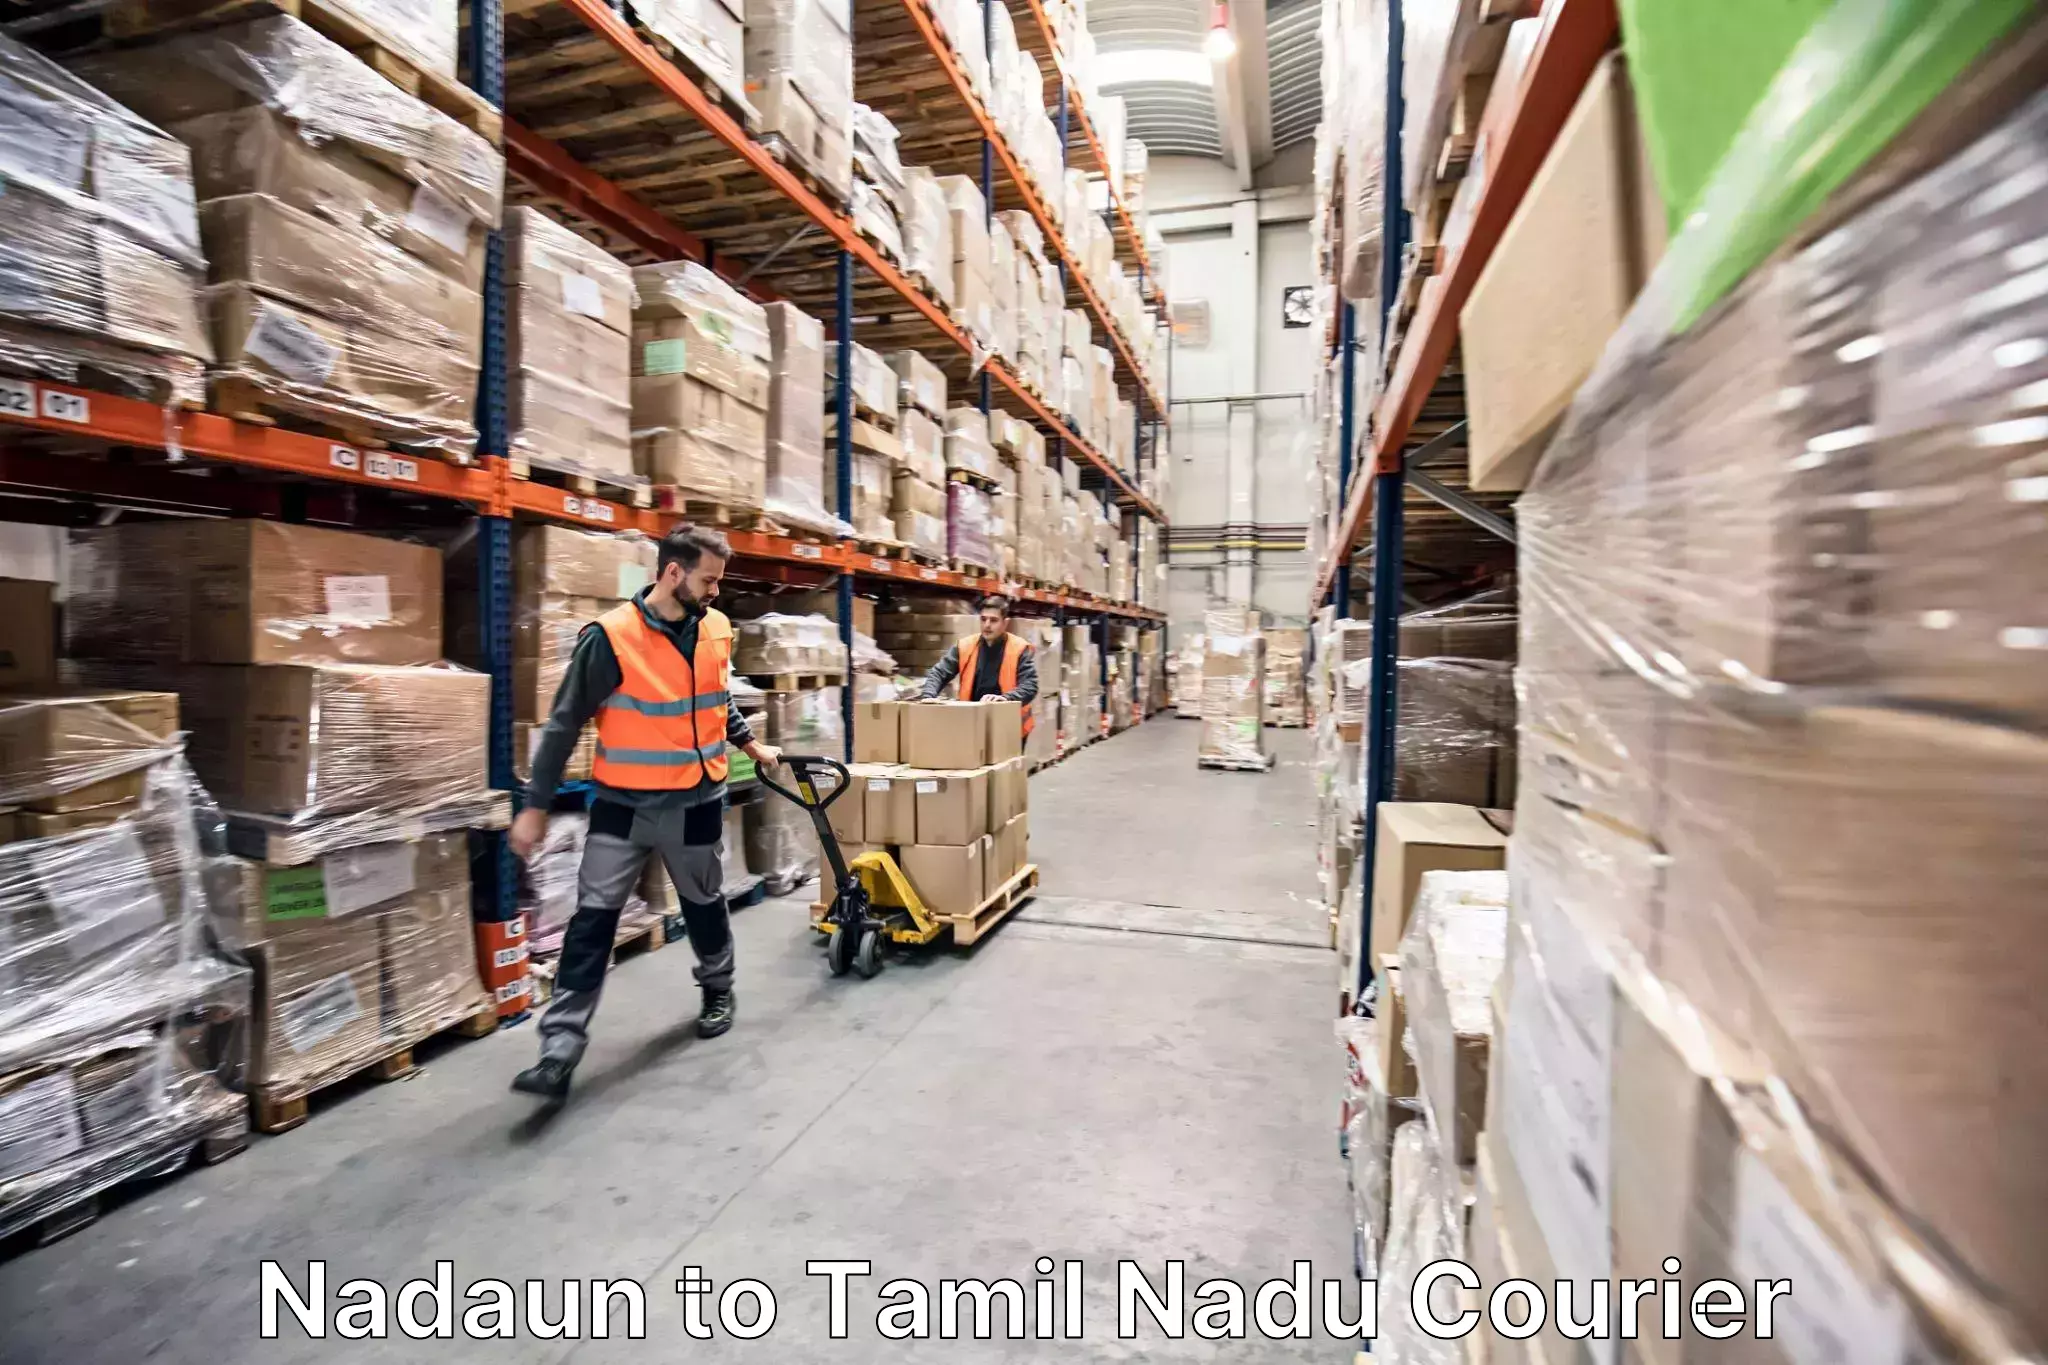 Home moving service Nadaun to Thiruvadanai